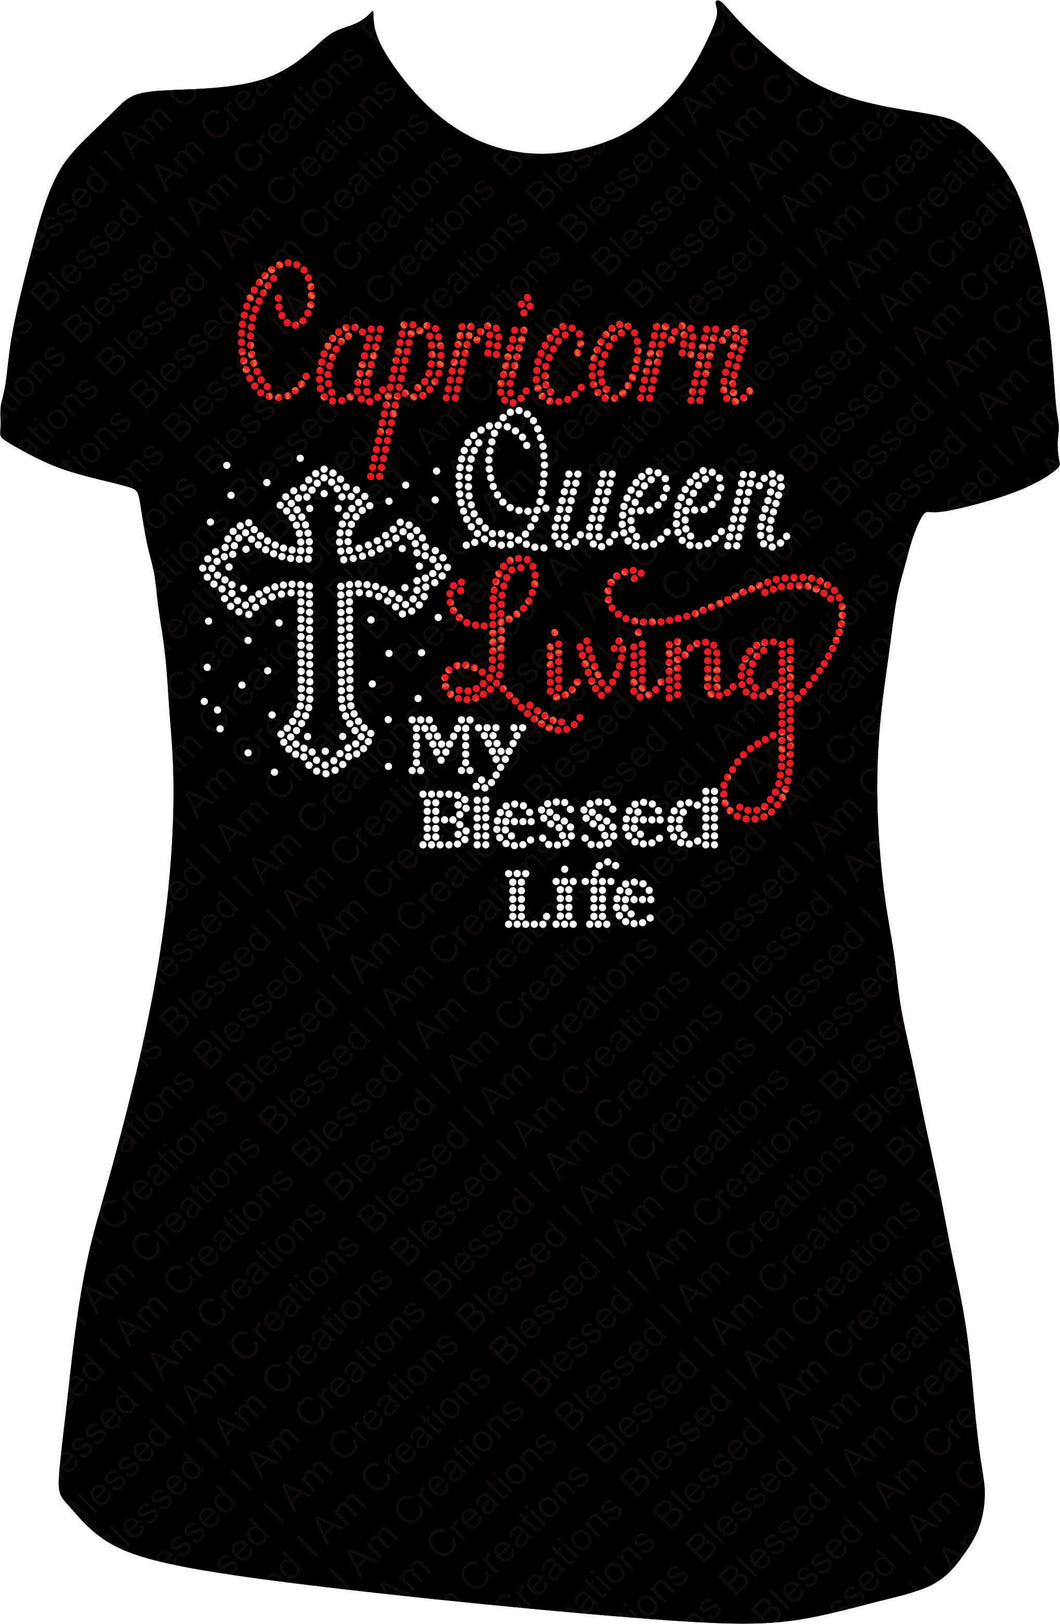 Capricorn Queen Shirt, Capricorn Rhinestone Shirt, Capricorn Bling Shirt, Rhinestone Shirt, Bling Shirt, Birthday Shirt Women, Living My Blessed Life Shirt